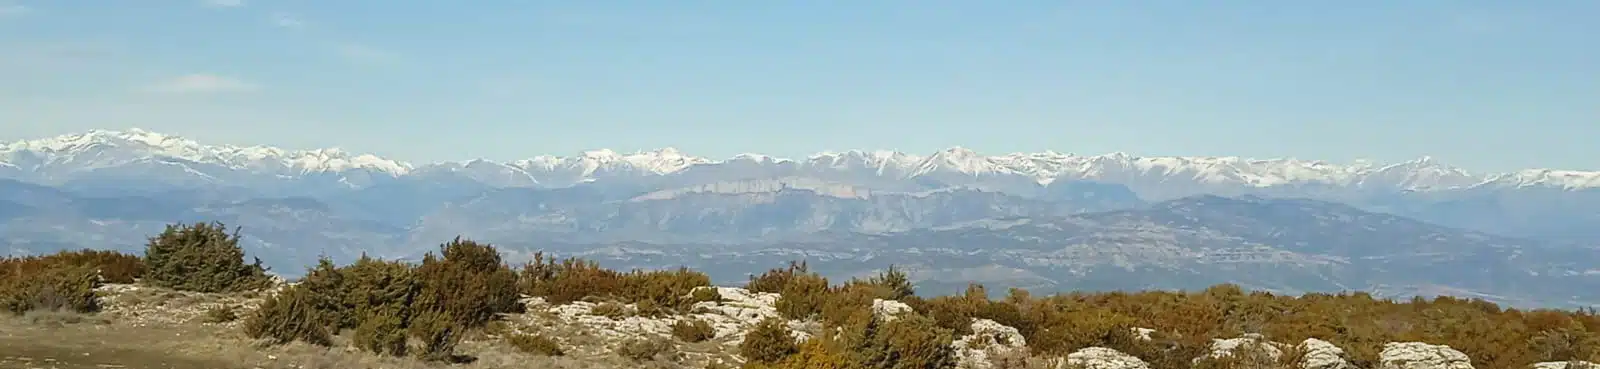 Vue de la chaine des Pyrénées depuis le décollage dAger en Espagne